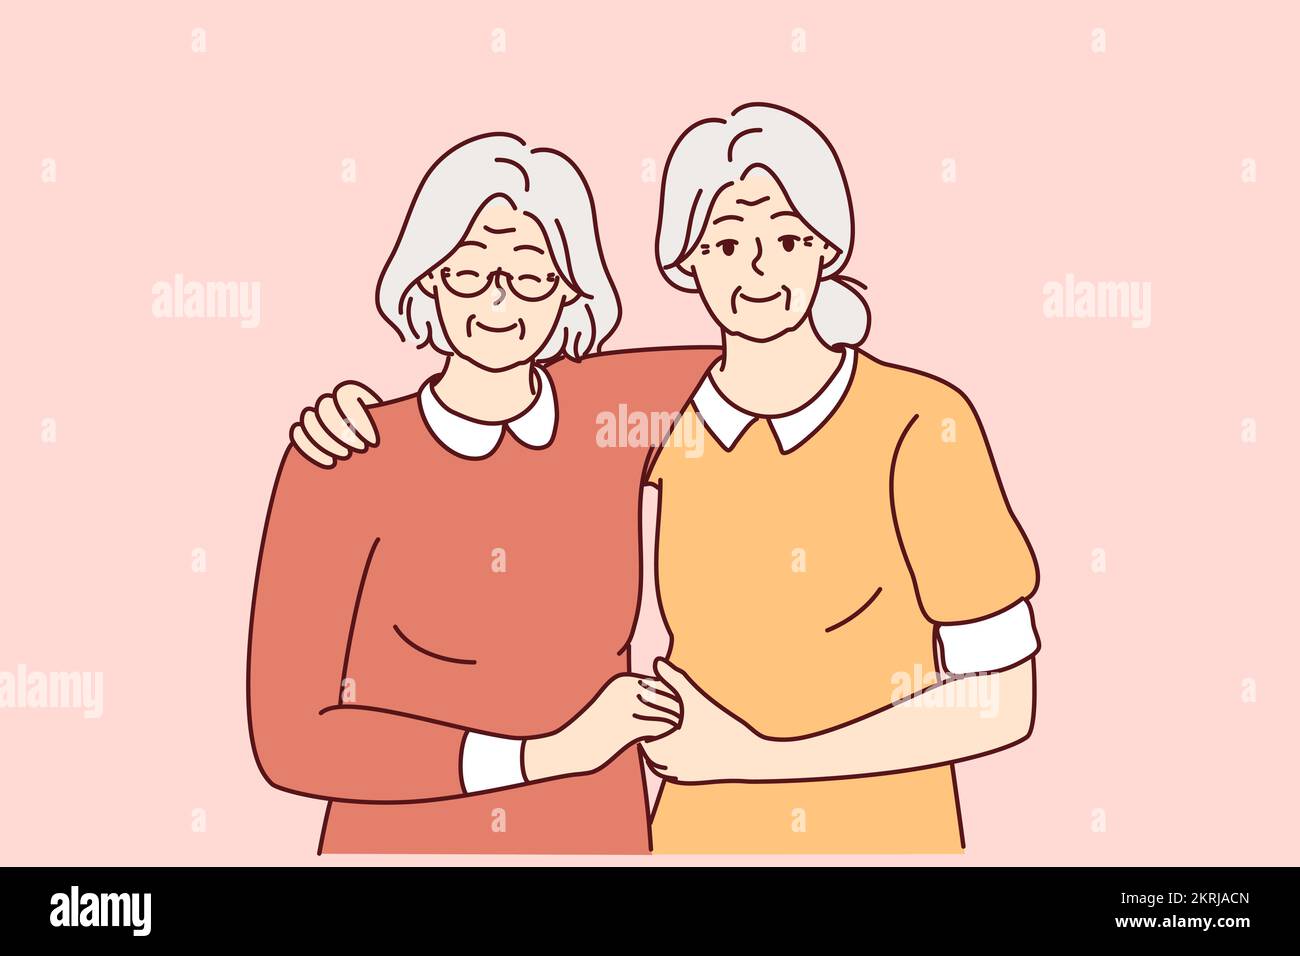 Porträt von lächelnden älteren weiblichen Freundinnen, die sich umarmen und lang anhaltende Freundschaft zeigen. Glückliche ältere Großmütter begrüßen Einheit und Fürsorge. Vektordarstellung. Stock Vektor